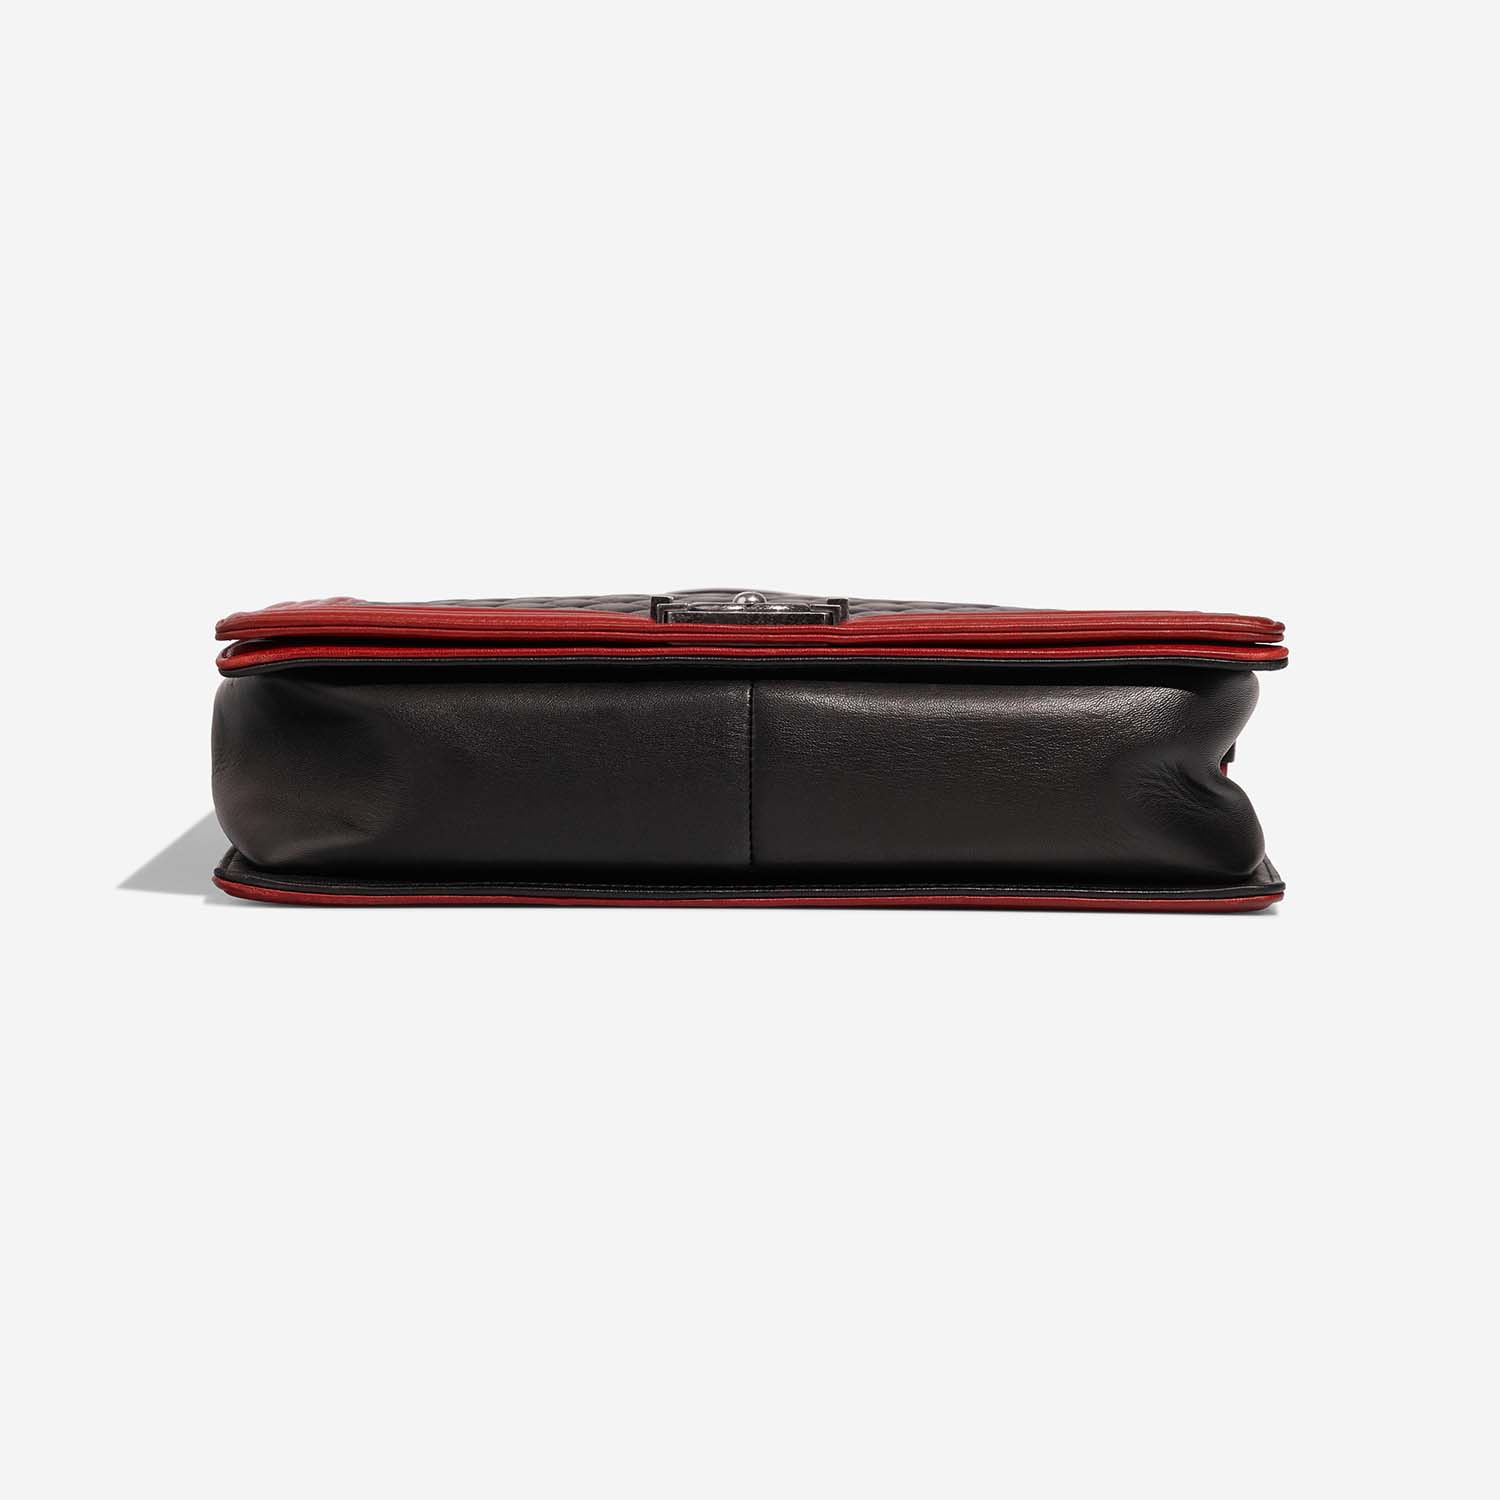 Chanel Boy Large Black-Red Bottom | Verkaufen Sie Ihre Designer-Tasche auf Saclab.com